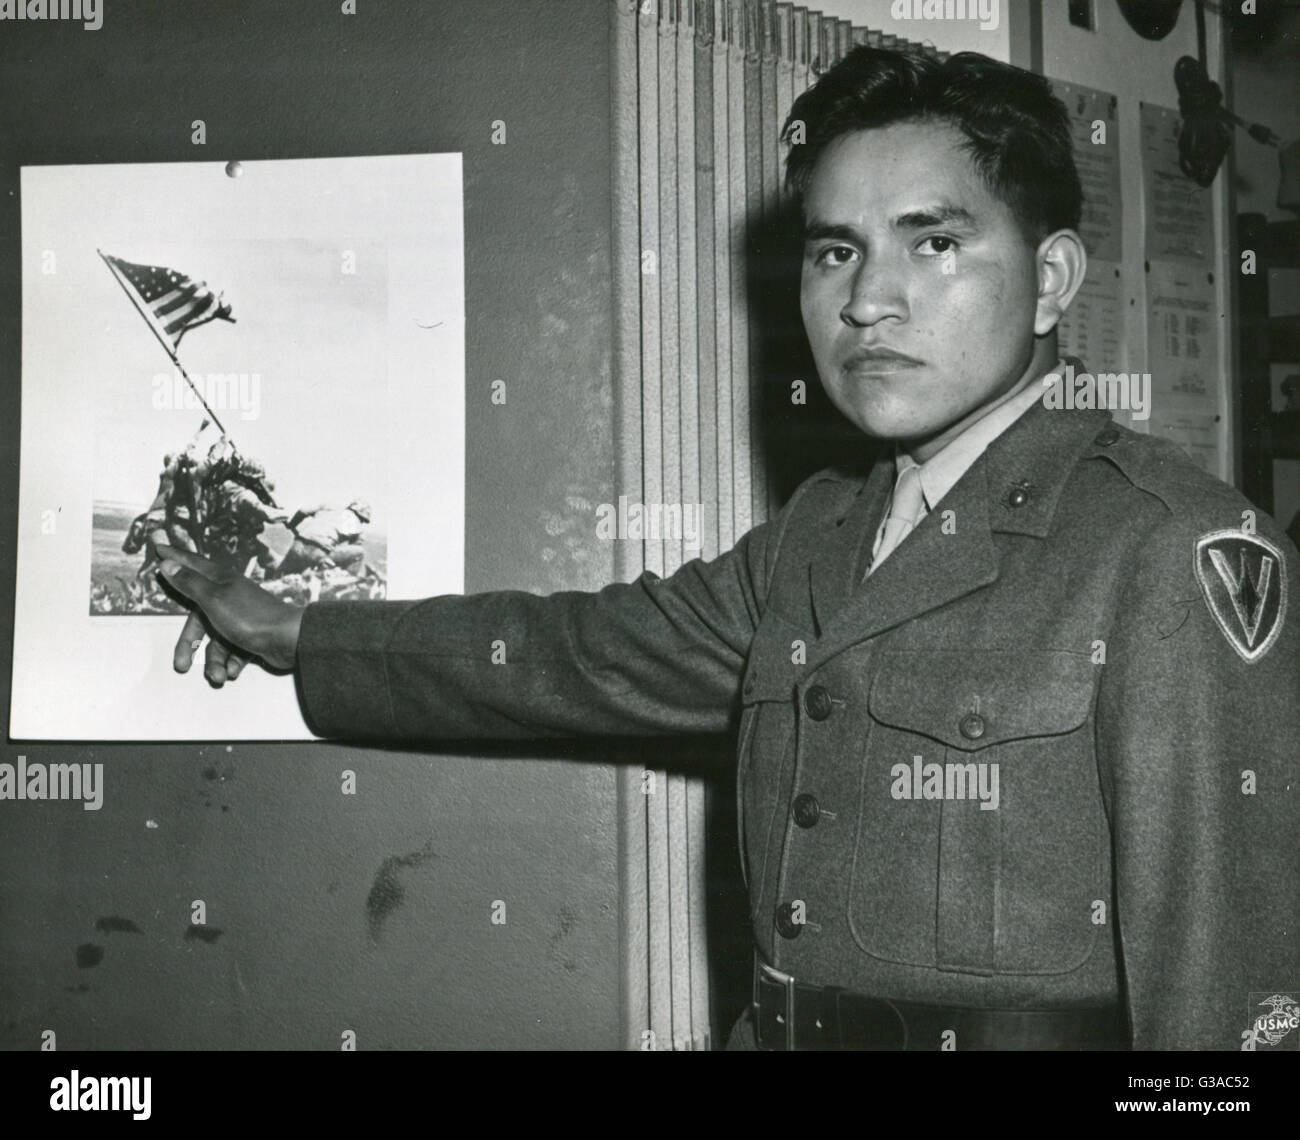 Le Soldat de première classe Marine Ira Hayes illustre le rôle qu'il a joué dans l'éducation de la Bannière étoilée sur le mont Suribachi, Iwo Jima en soulignant son image sur la photo historique de l'événement. Banque D'Images